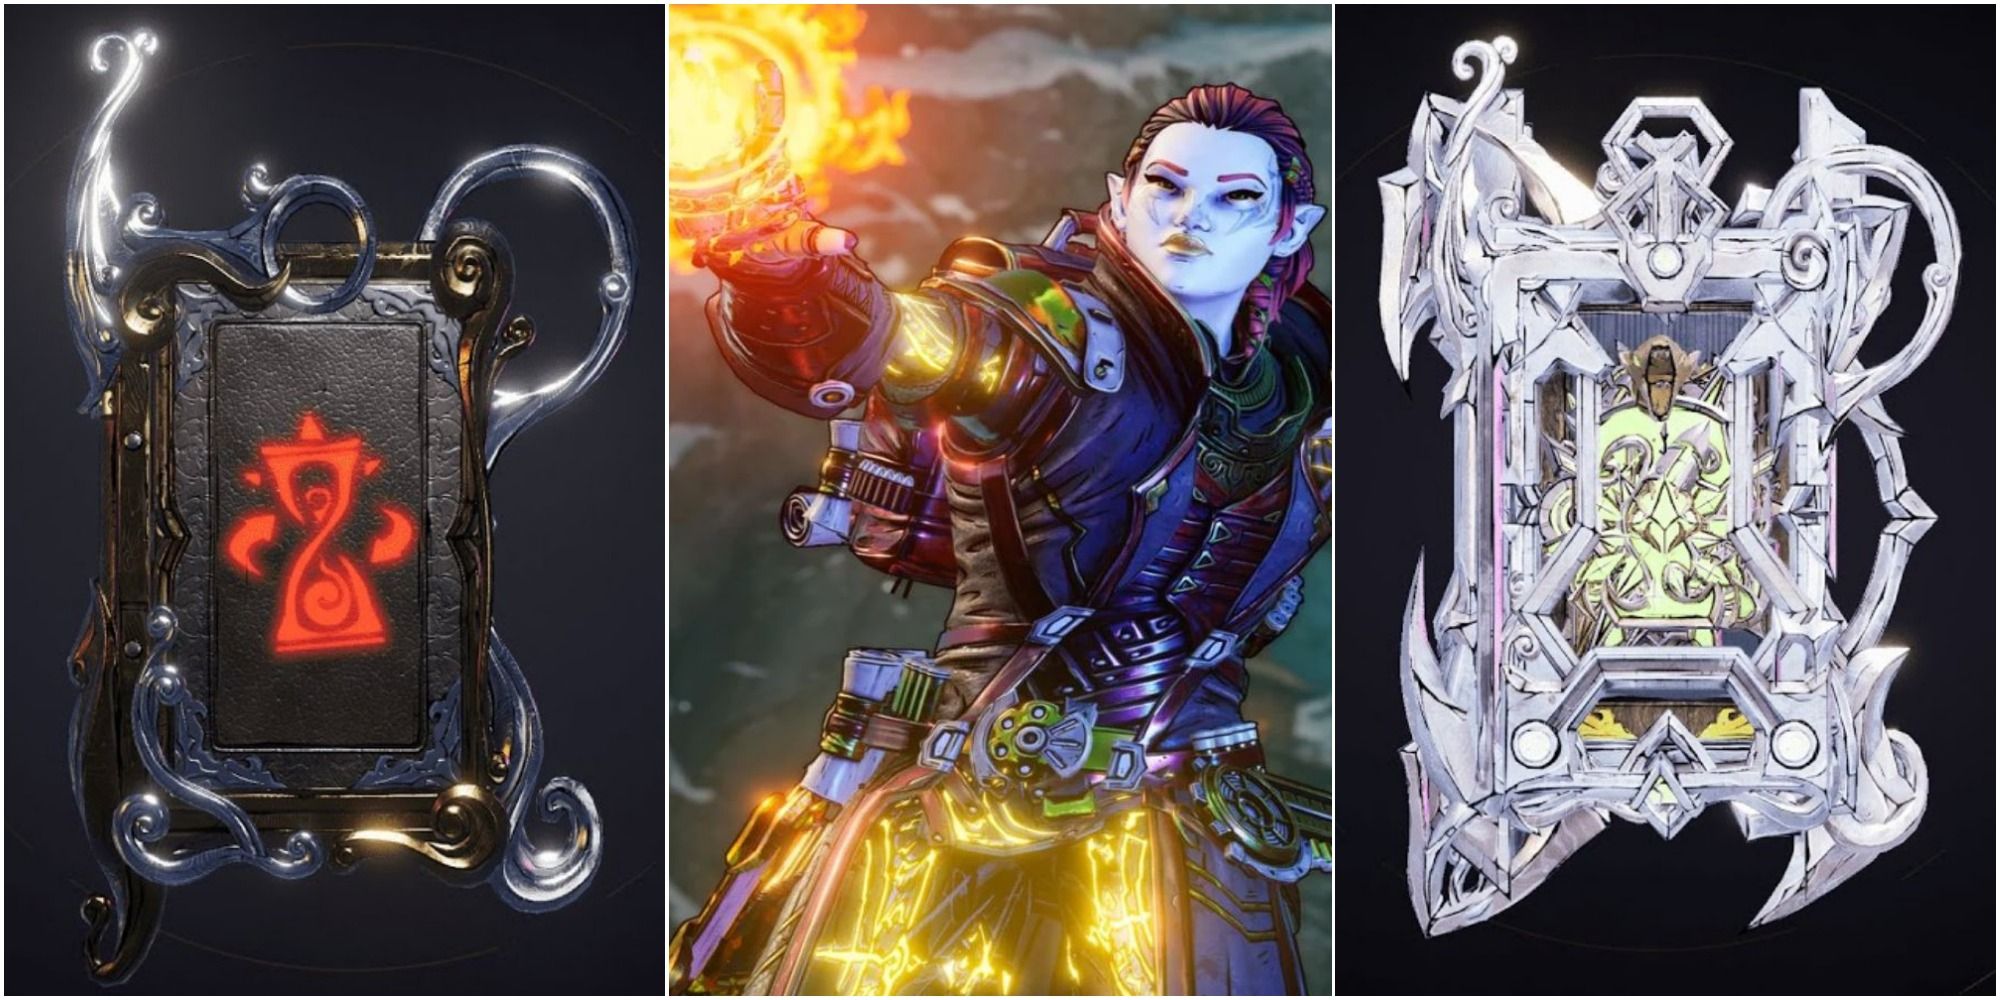 Split image from left to right: Time Skip spell, Spellshot casting a fire spell, and Sawblades spell